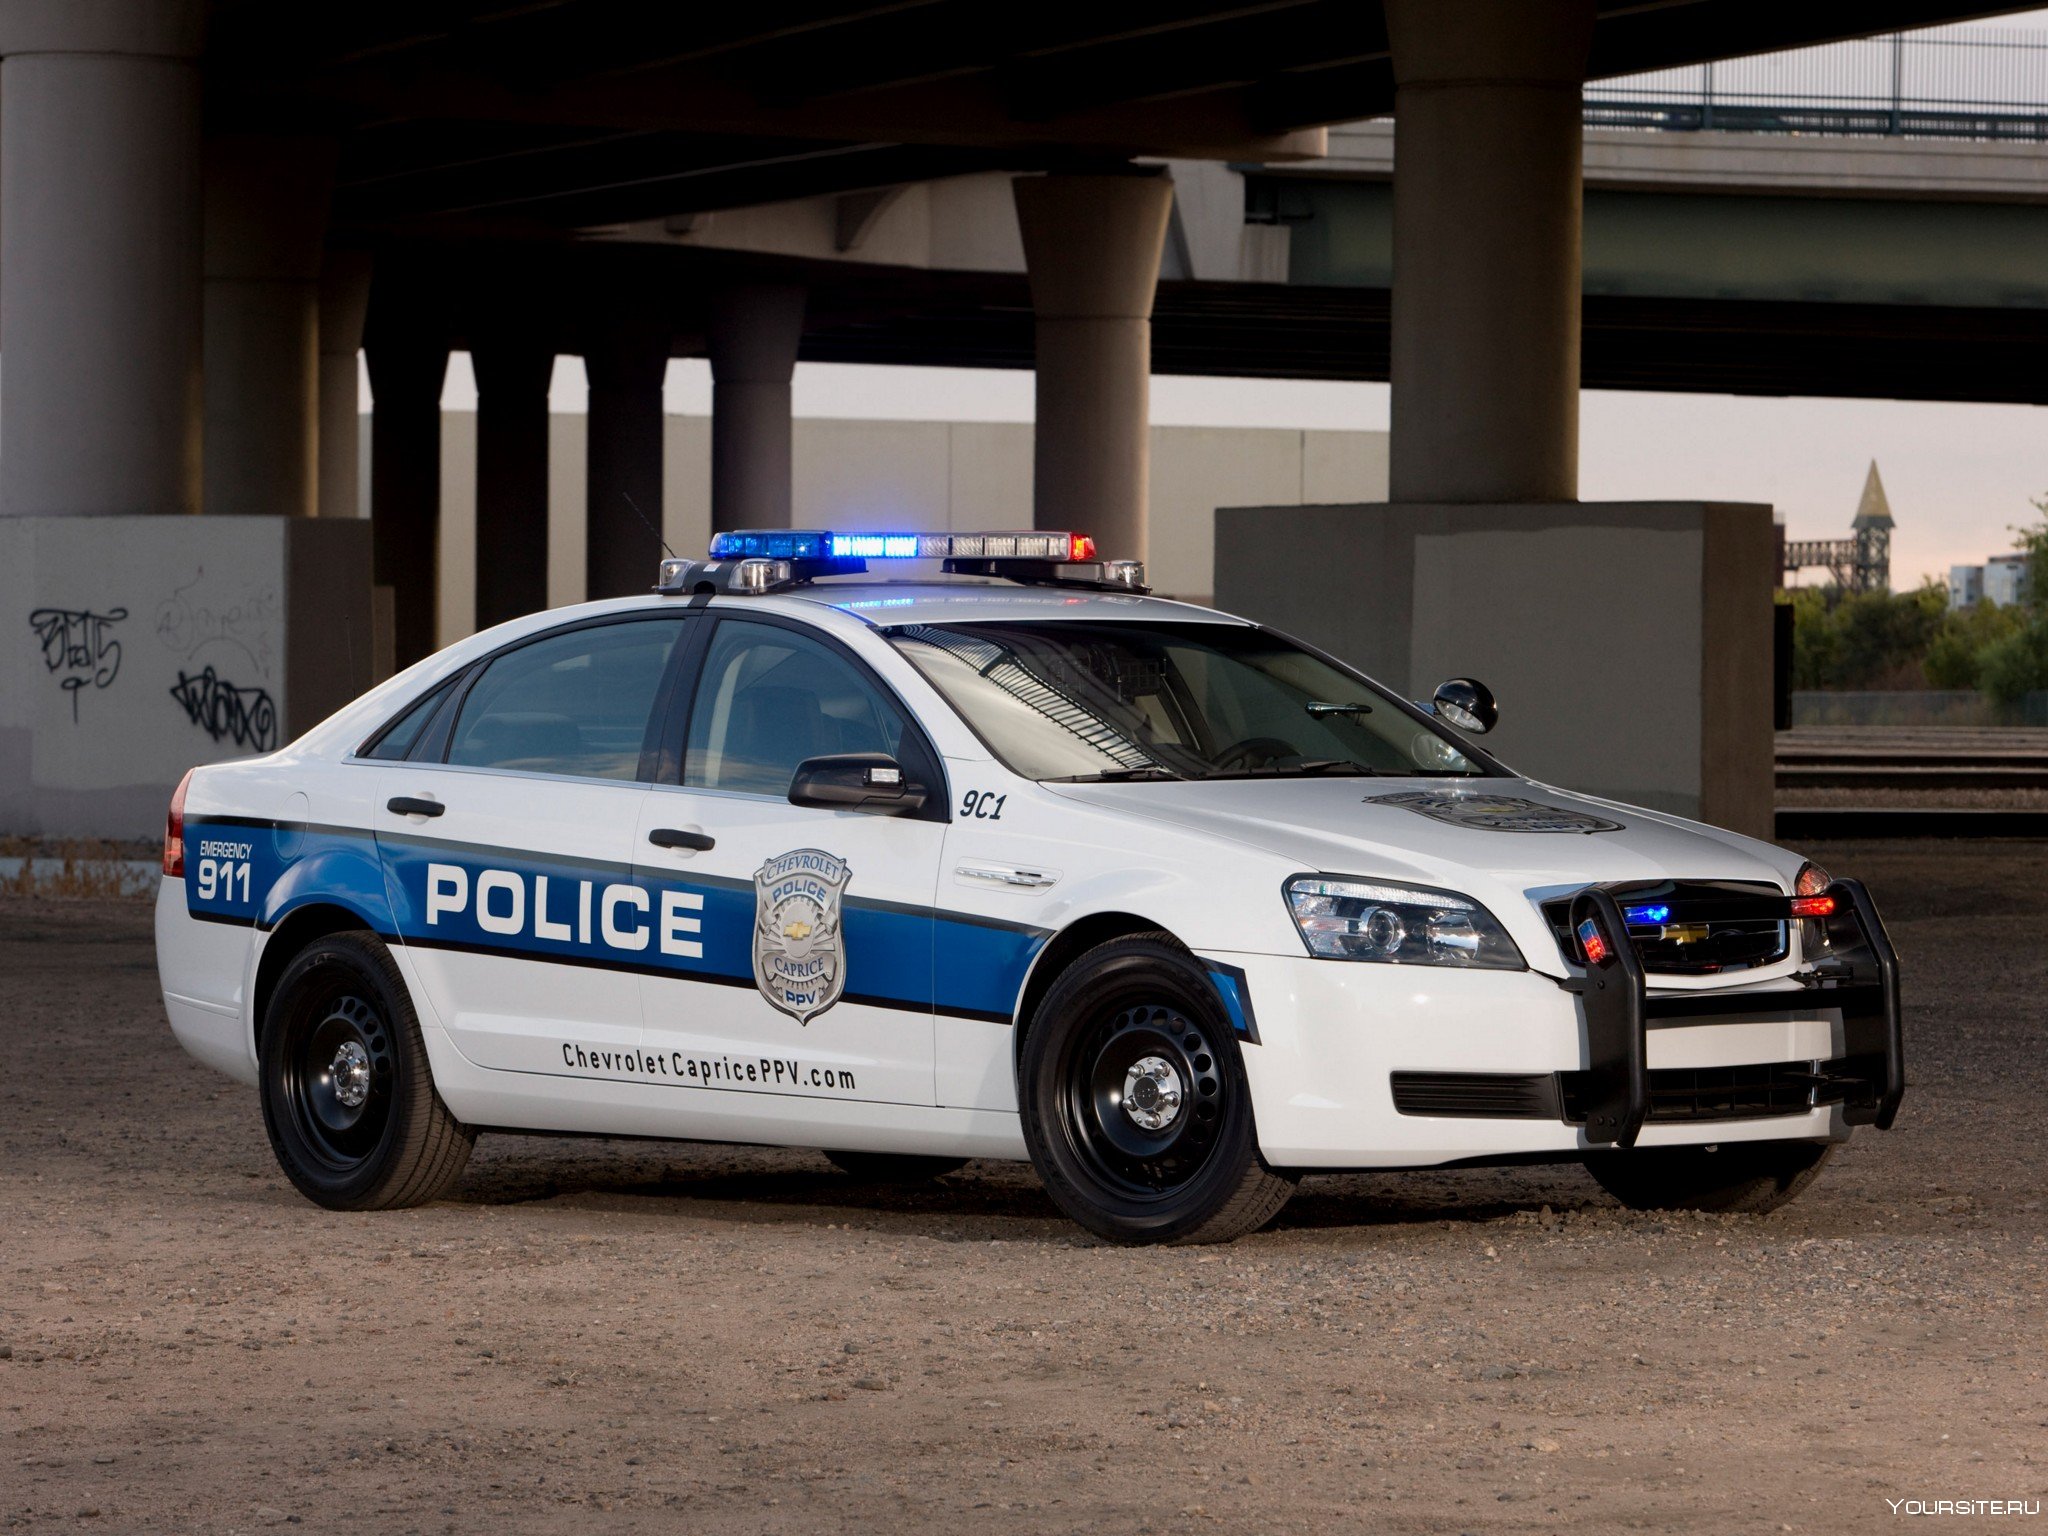 Полицейская машина другая. Chevrolet Caprice 9c1 Police.